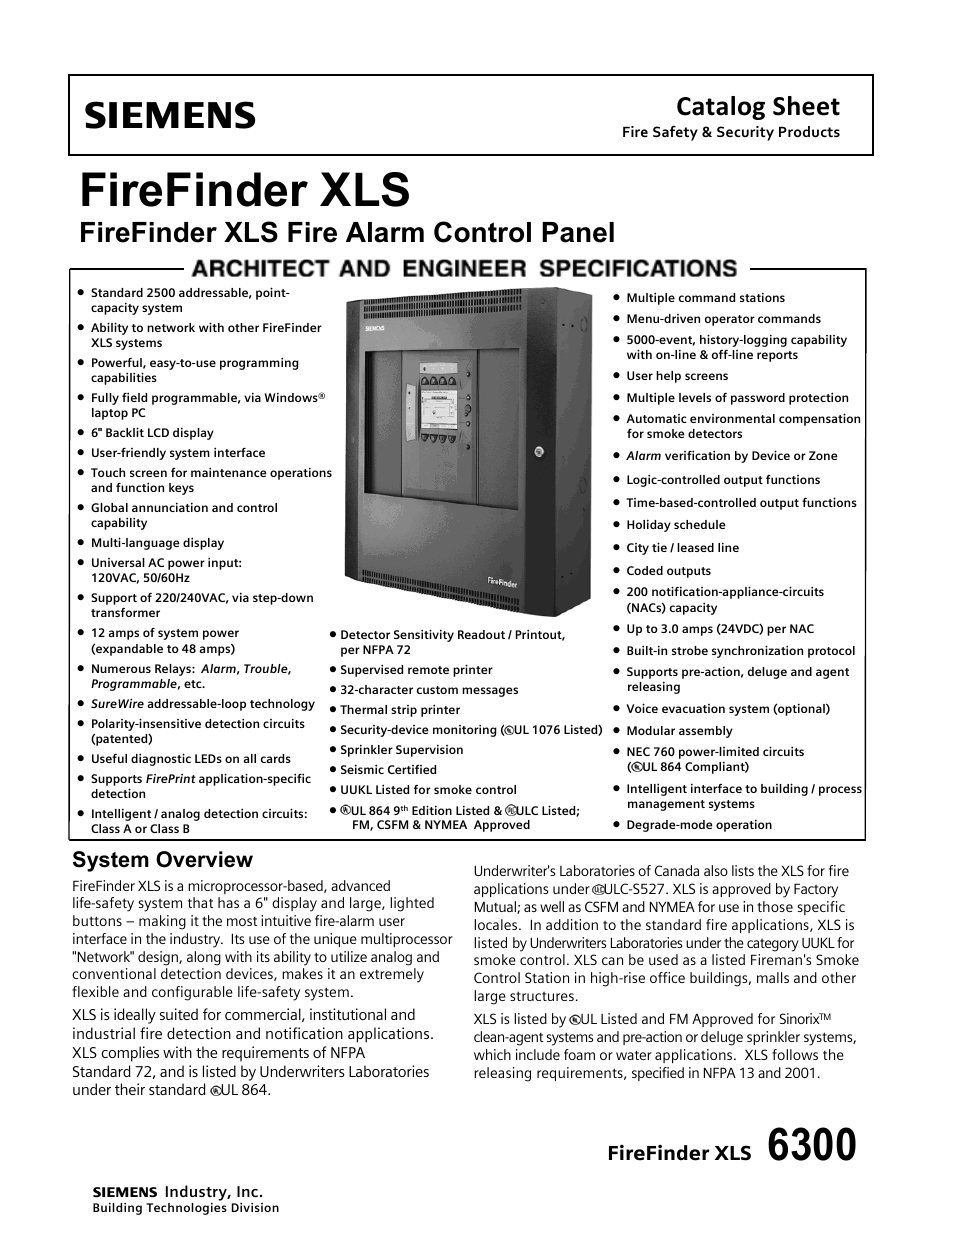 Firefinder XLS